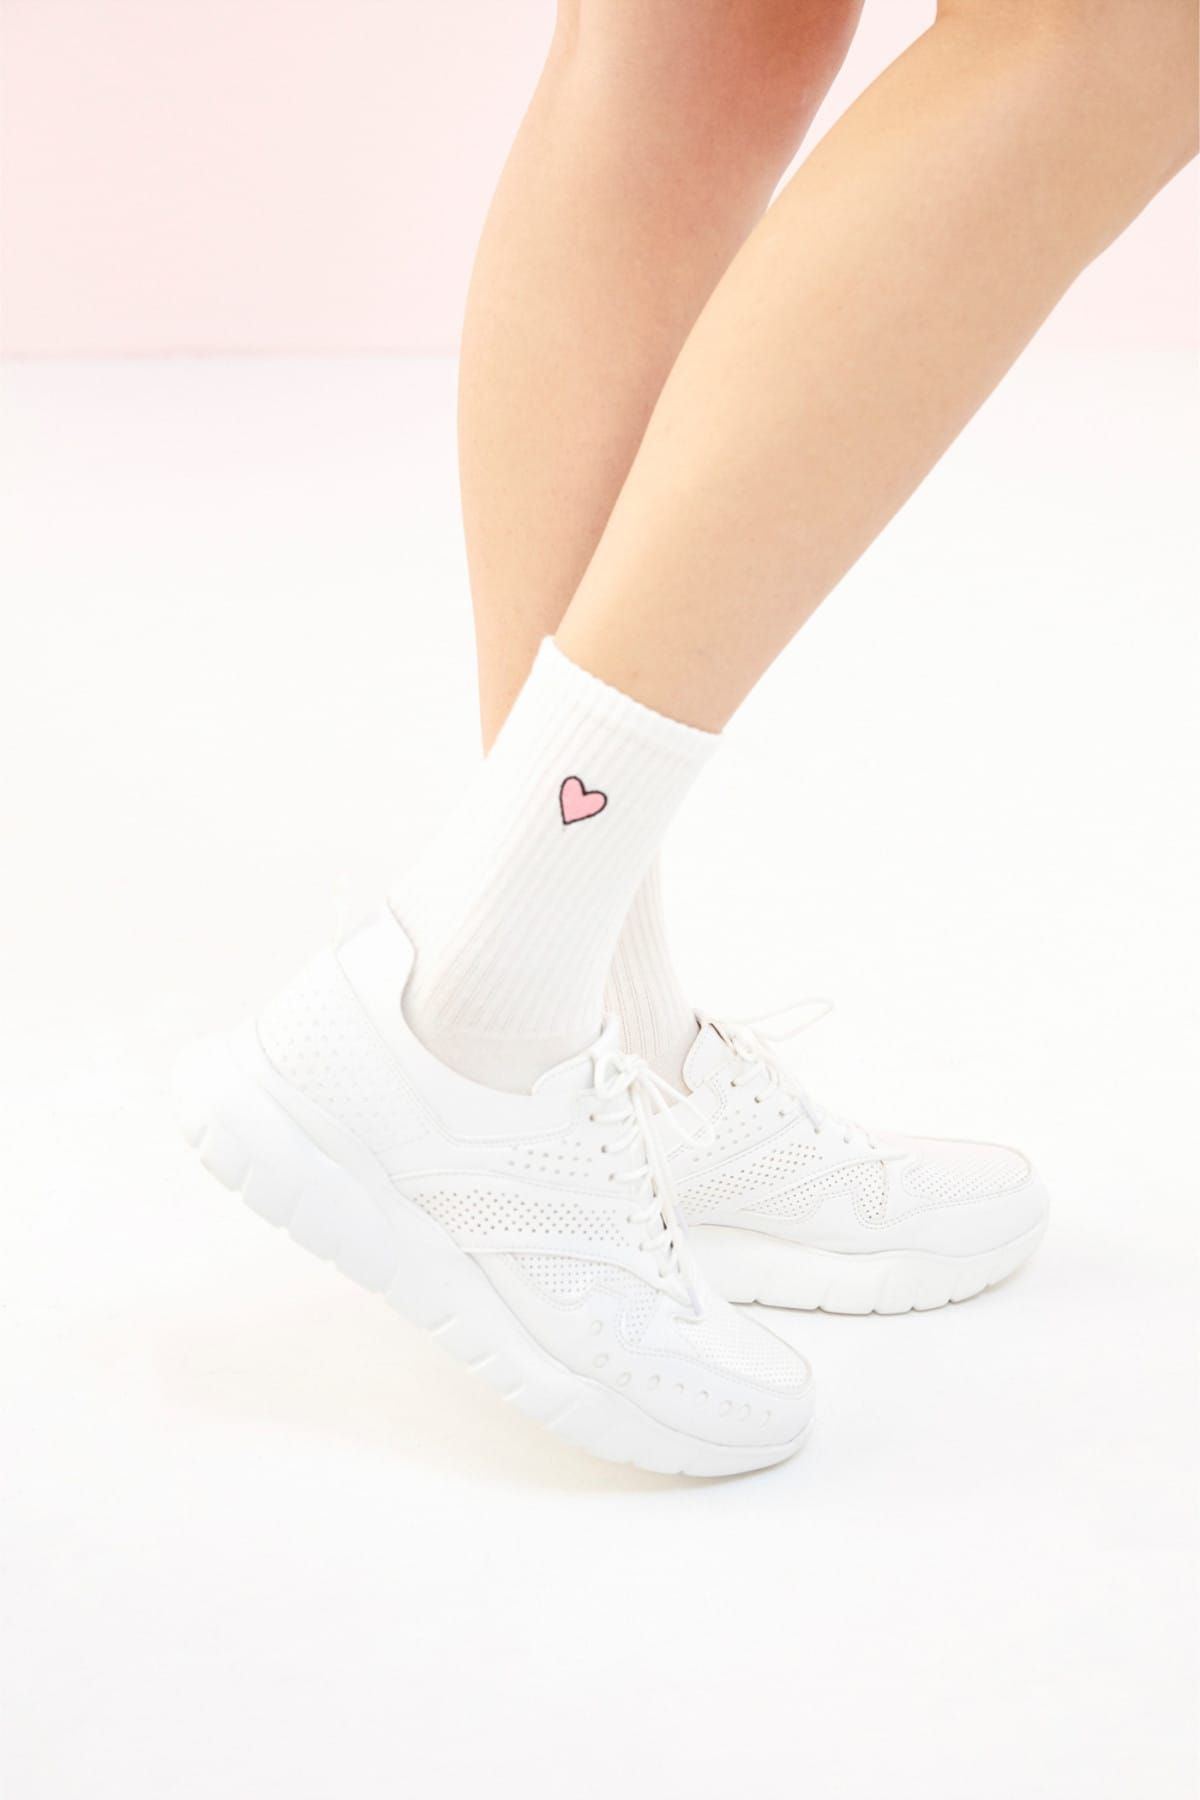 Mudo Kadın Beyaz Kalp Desenli Soket Çorap